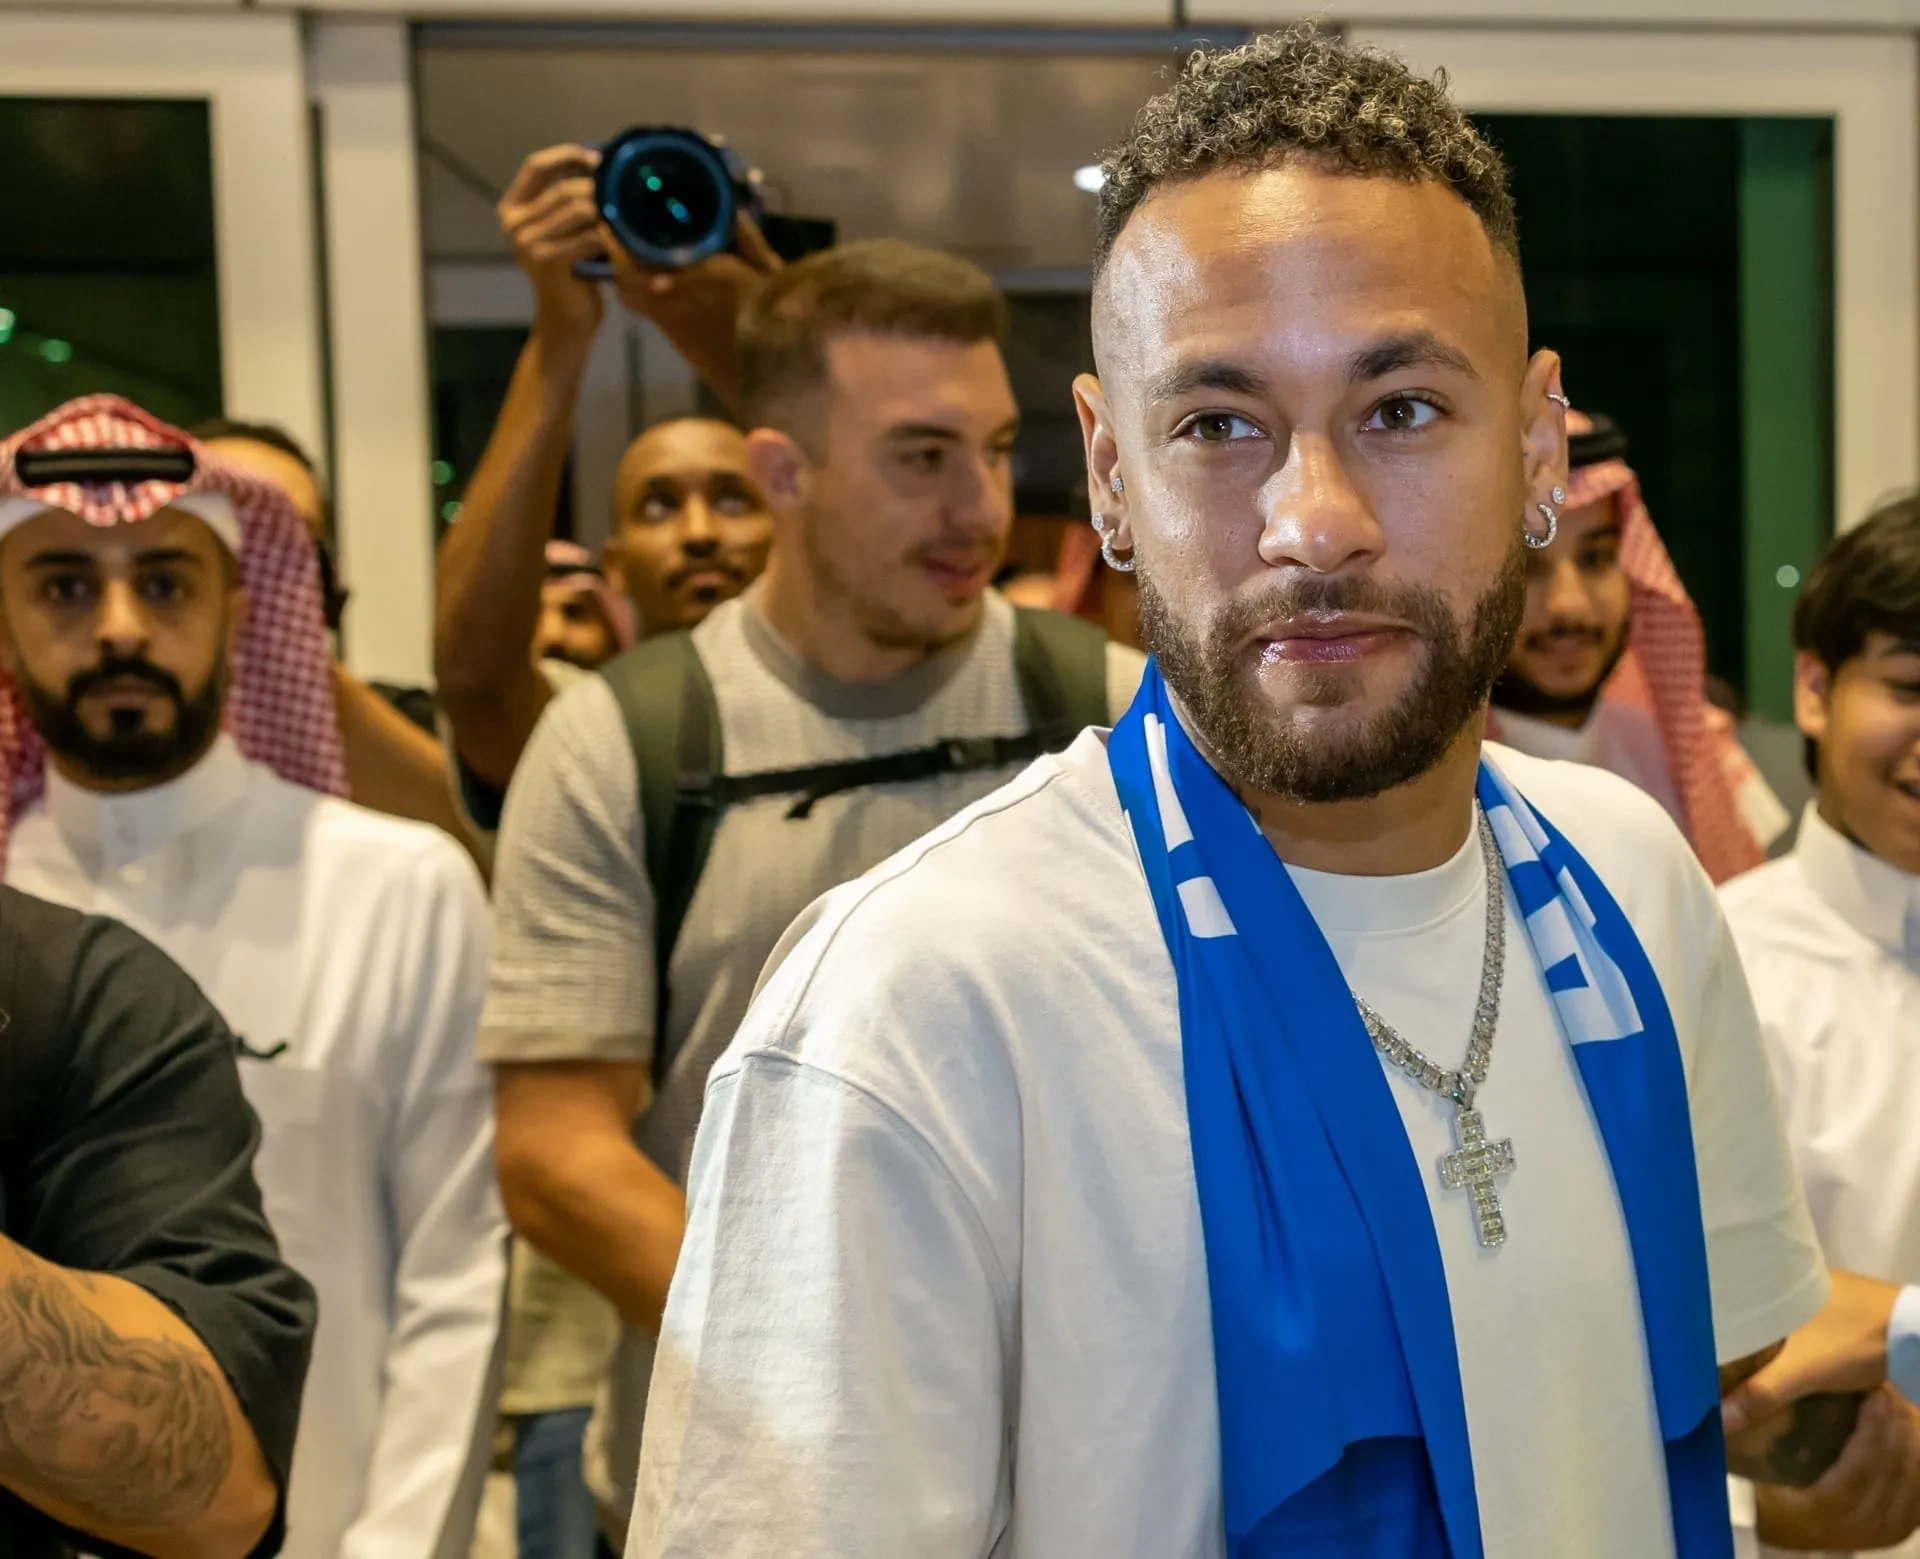 Sovaco de Cobra - Neymar terá o 3º maior salário do mundo na Arábia Saudita